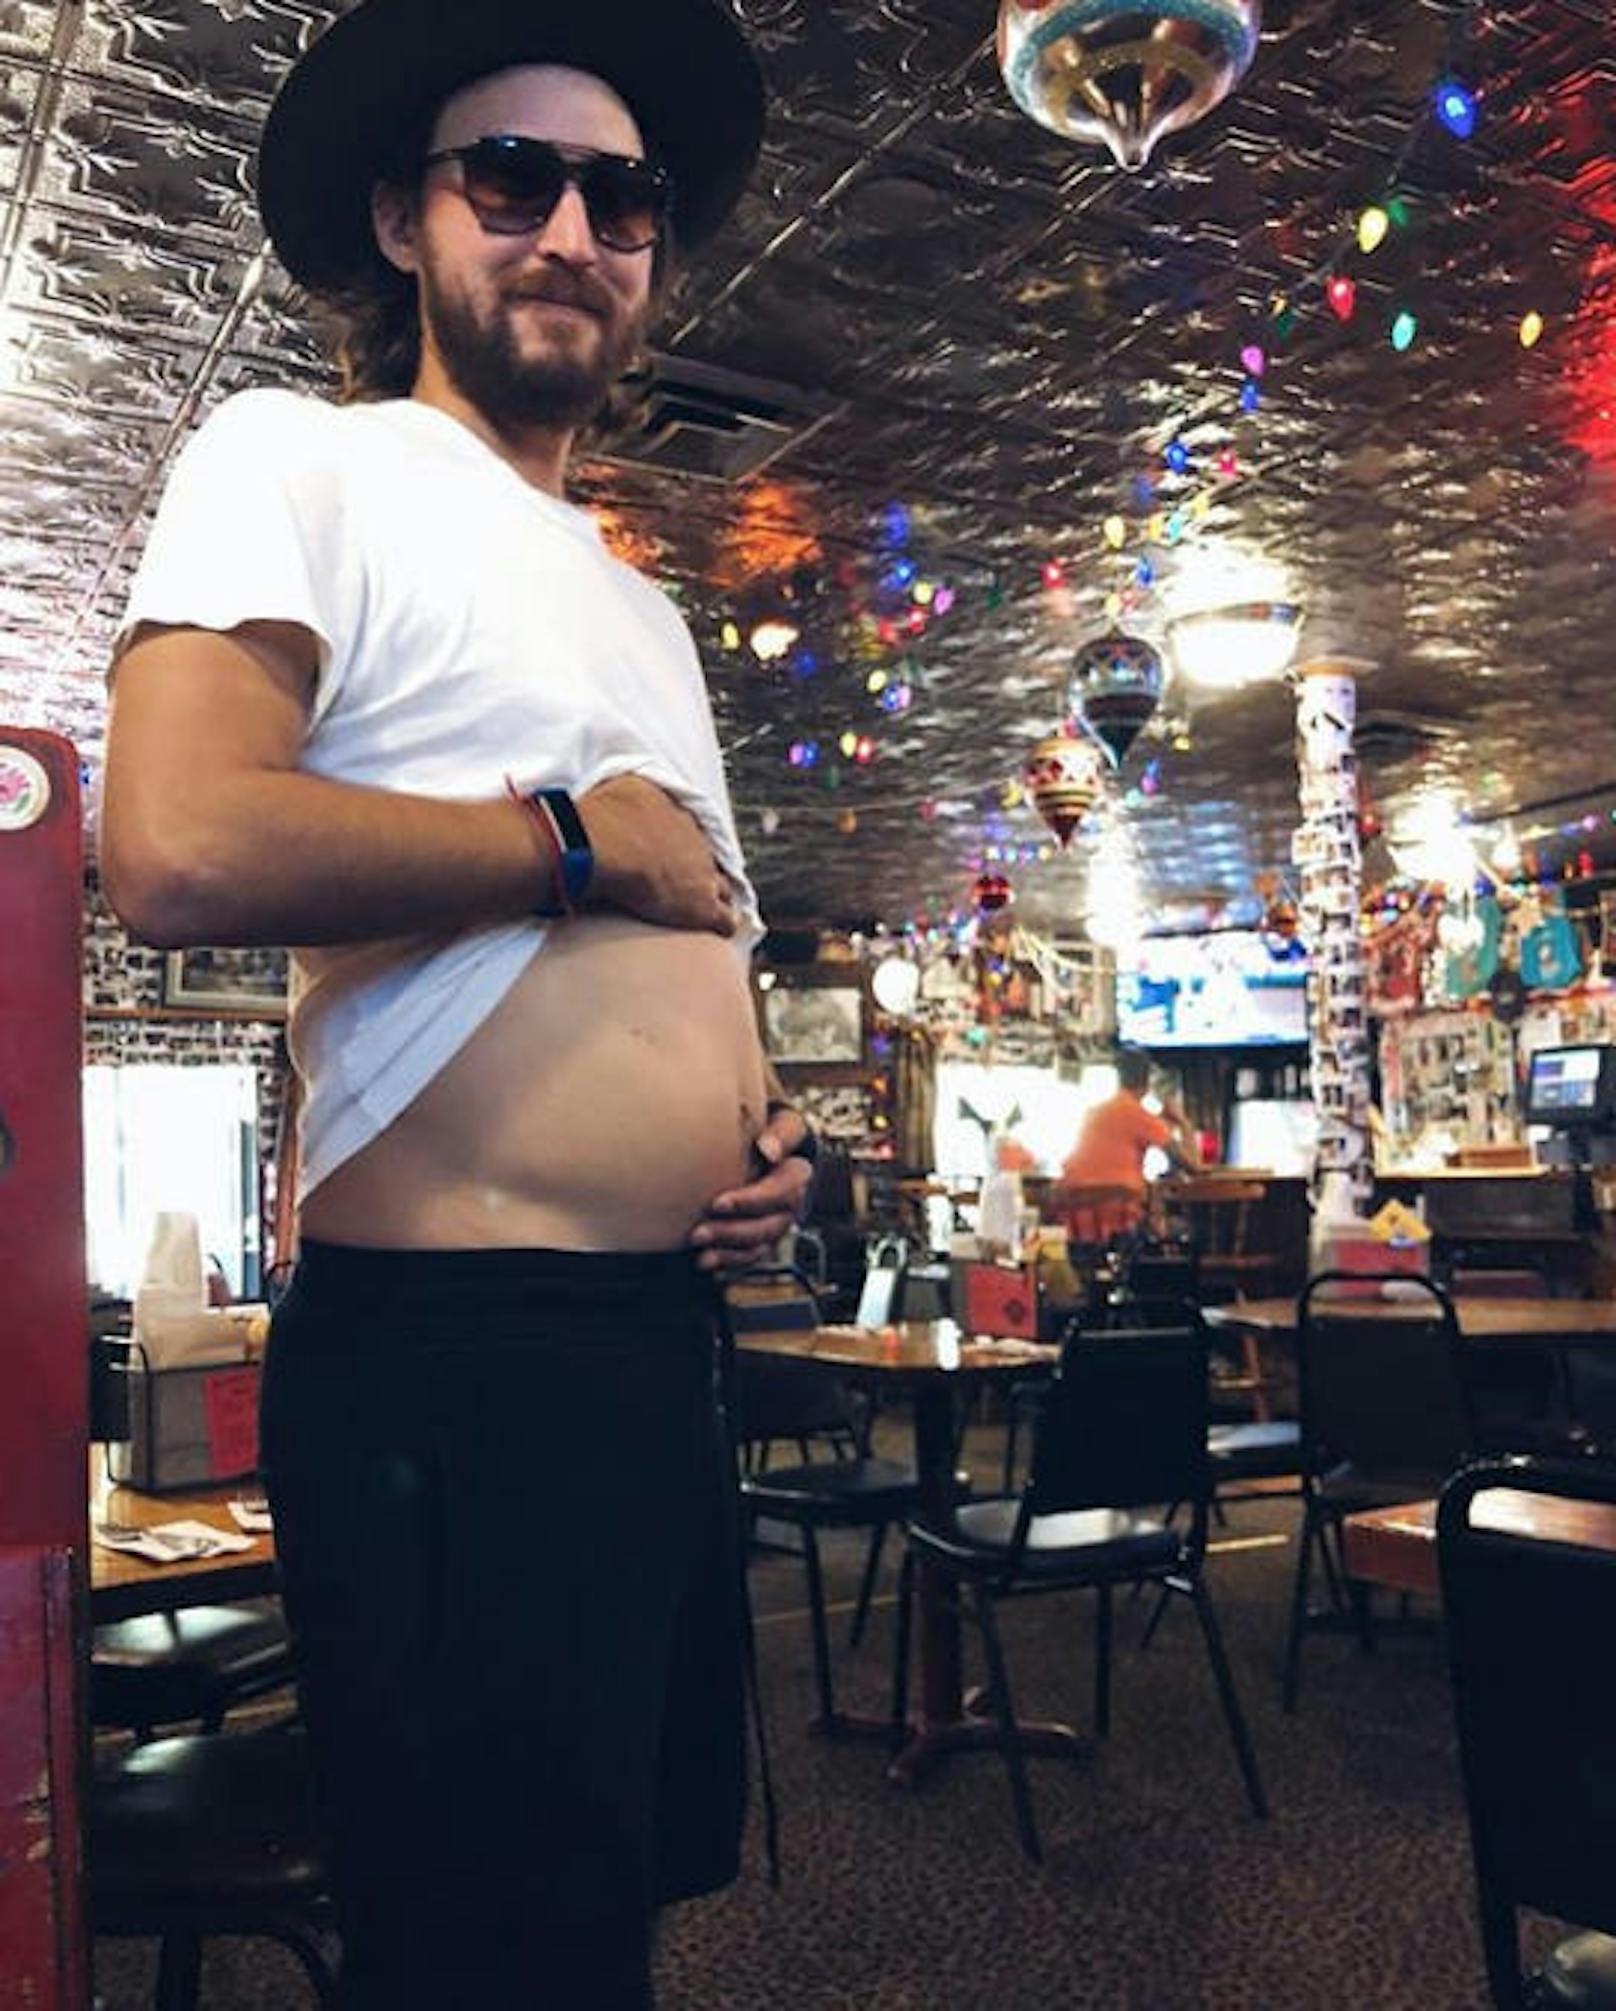 08.07.2018: Kate Hudson ist schwanger und ihr Herzblatt Chris Robinson "leidet" mit. "Gemeinsam schwanger", ist Kate amüsiert